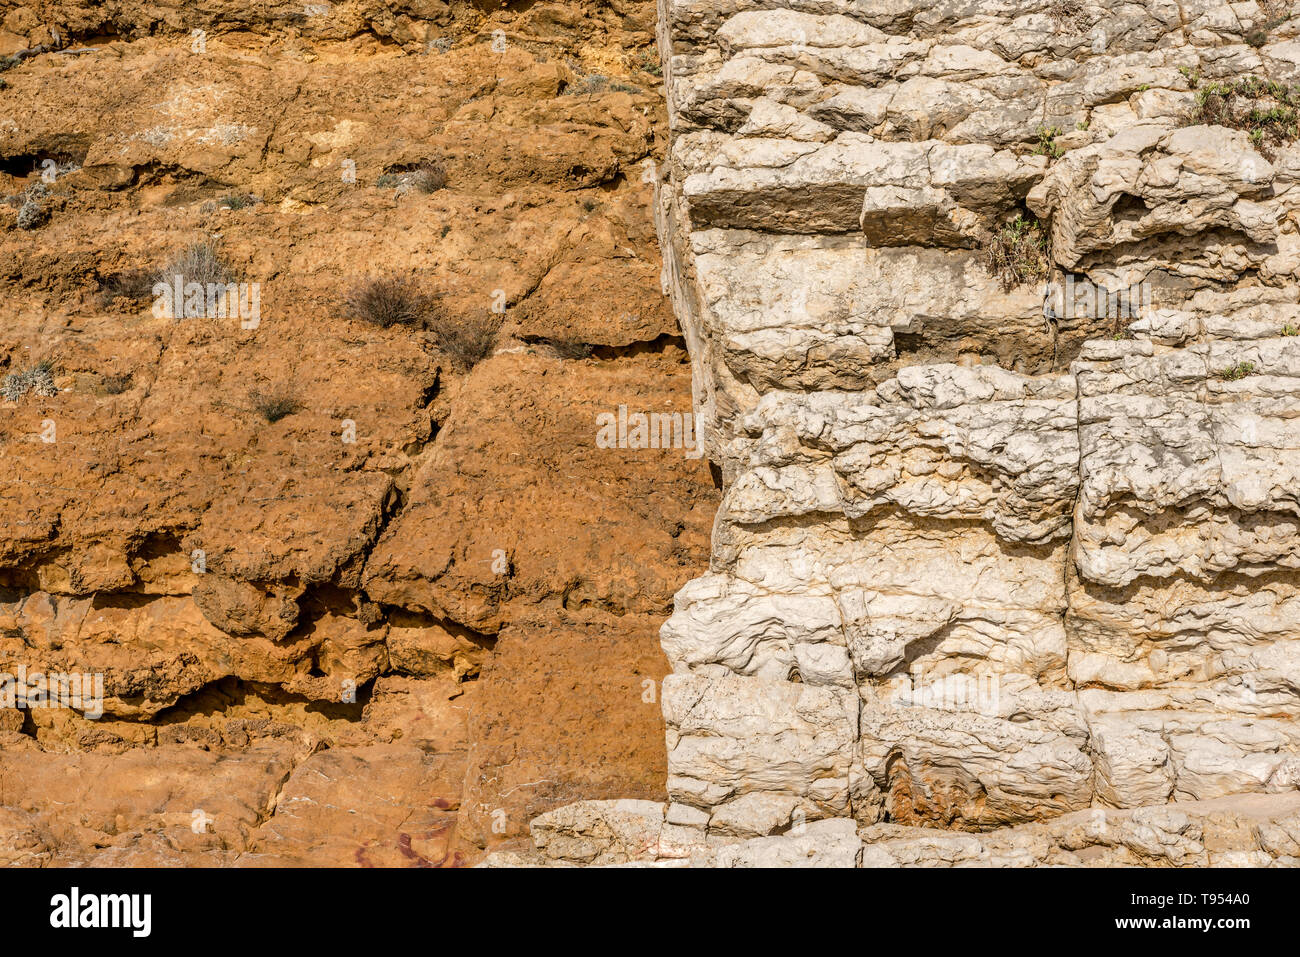 Typische Felswand Bildung in der Nähe von Guincho Strand in Portugal mit kontrastierenden rock Arten bilden Hintergrund Oberflächen, Strukturen und Texturen aus Lim Stockfoto